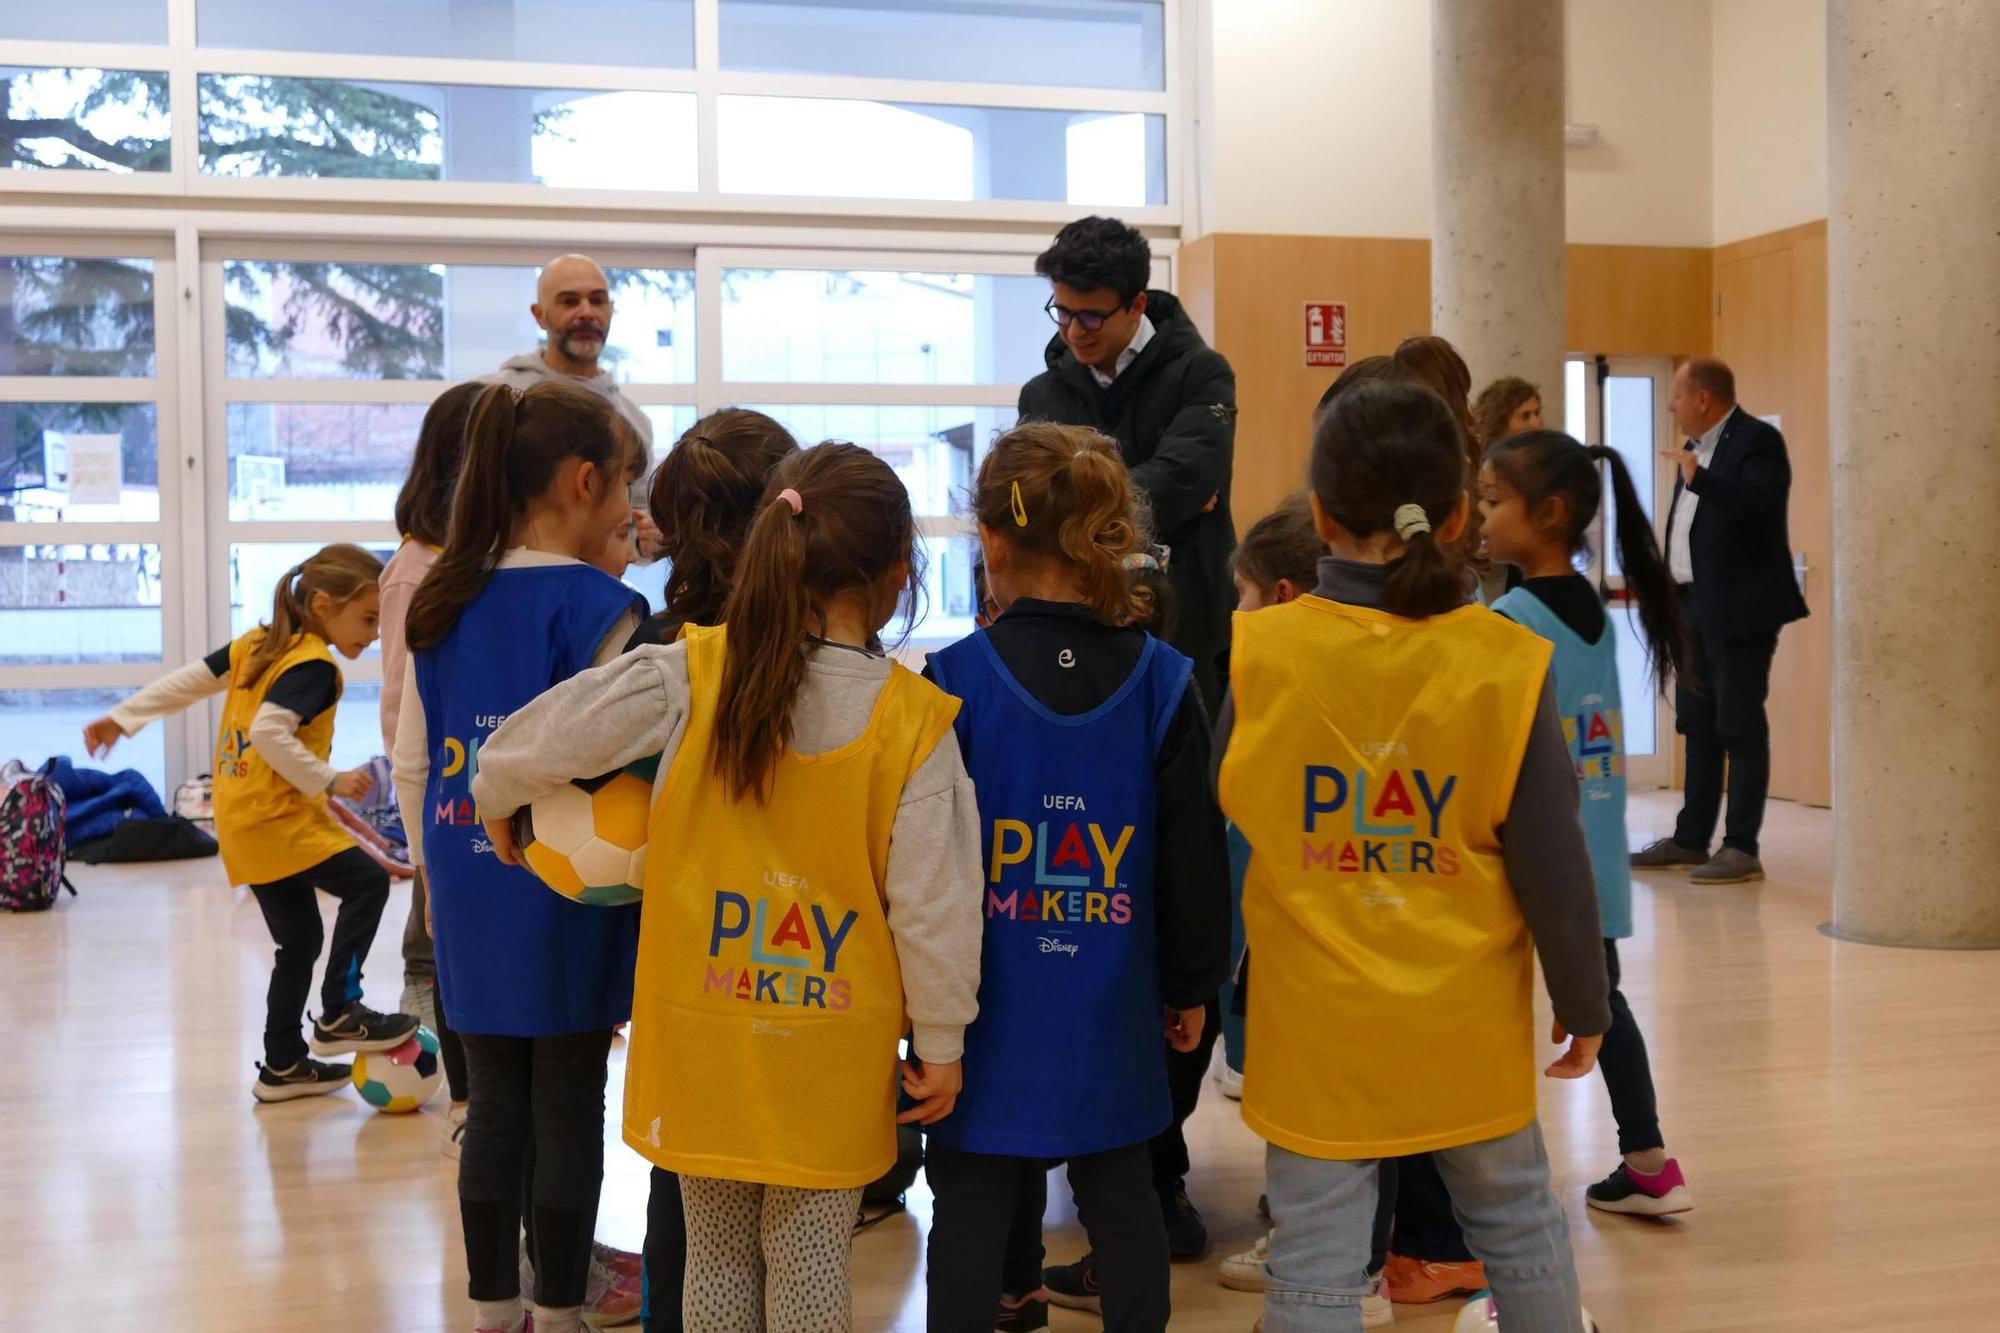 Les Playmakers d’Escolàpies Figueres reben la visita de la Federació Catalana de Futbol